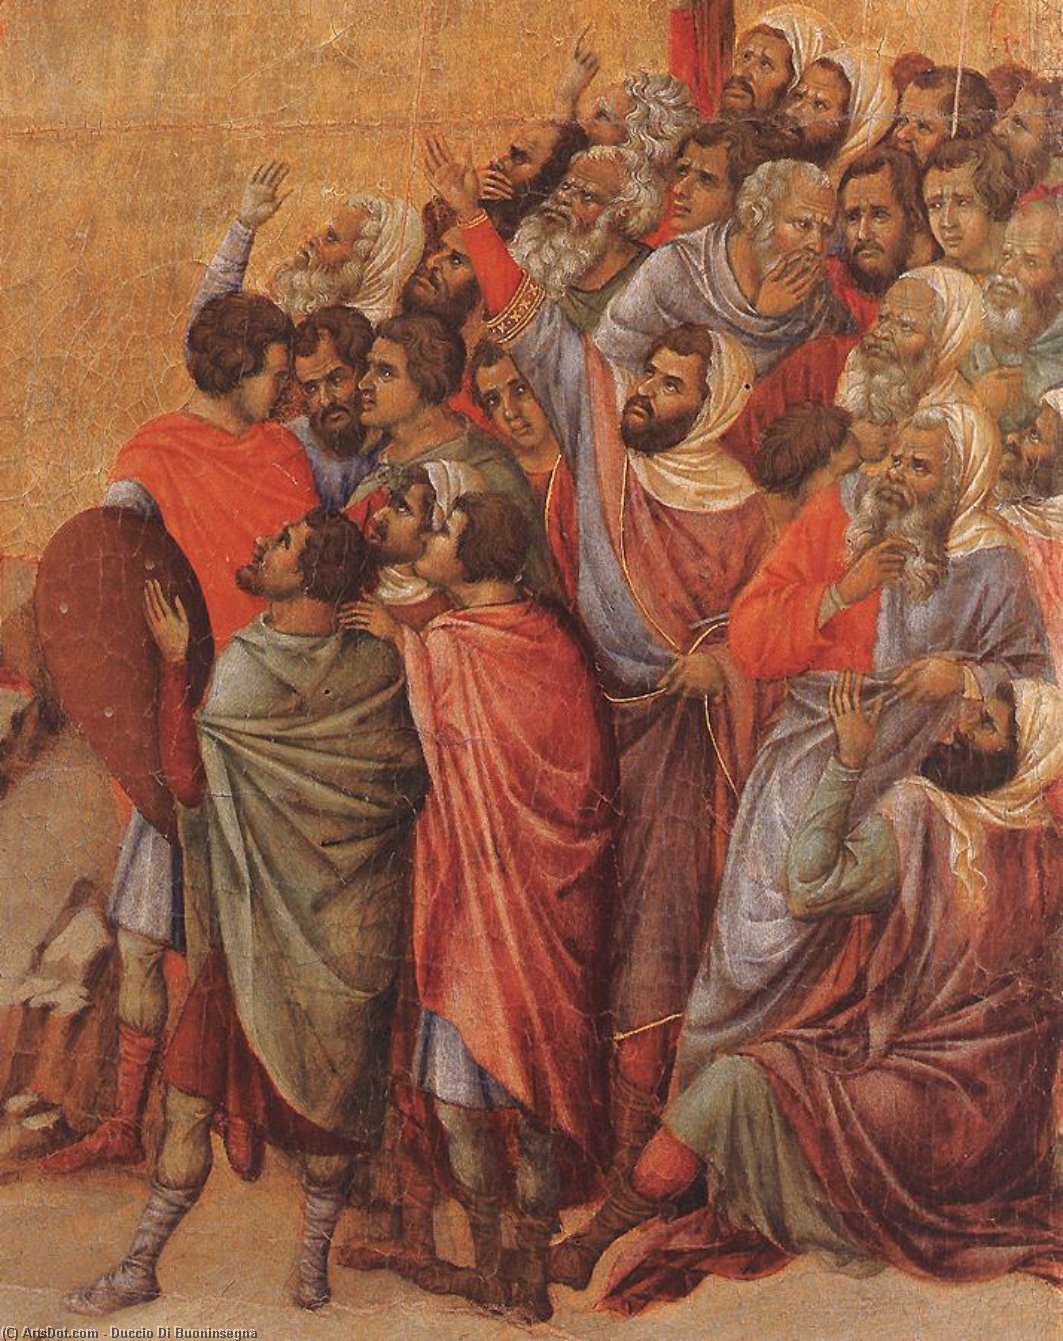 WikiOO.org - Encyclopedia of Fine Arts - Maleri, Artwork Duccio Di Buoninsegna - Crucifix (detail)